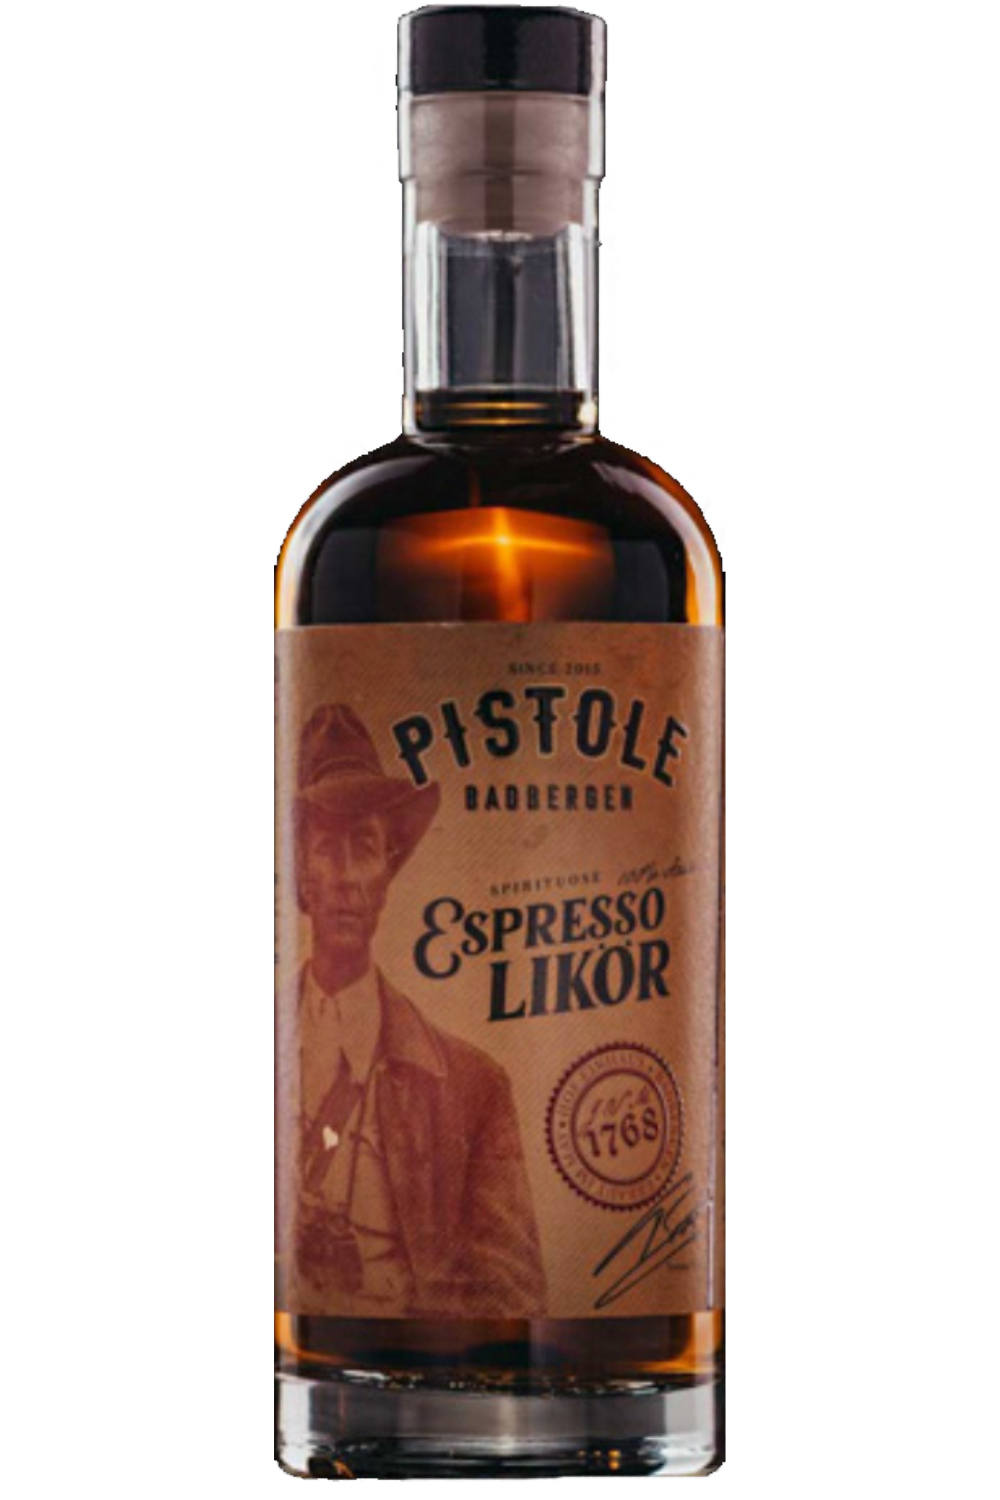 Pistole Espresso Likör 28 % 0,5 Liter - Getraenke-Handel.com ist Ihr ...